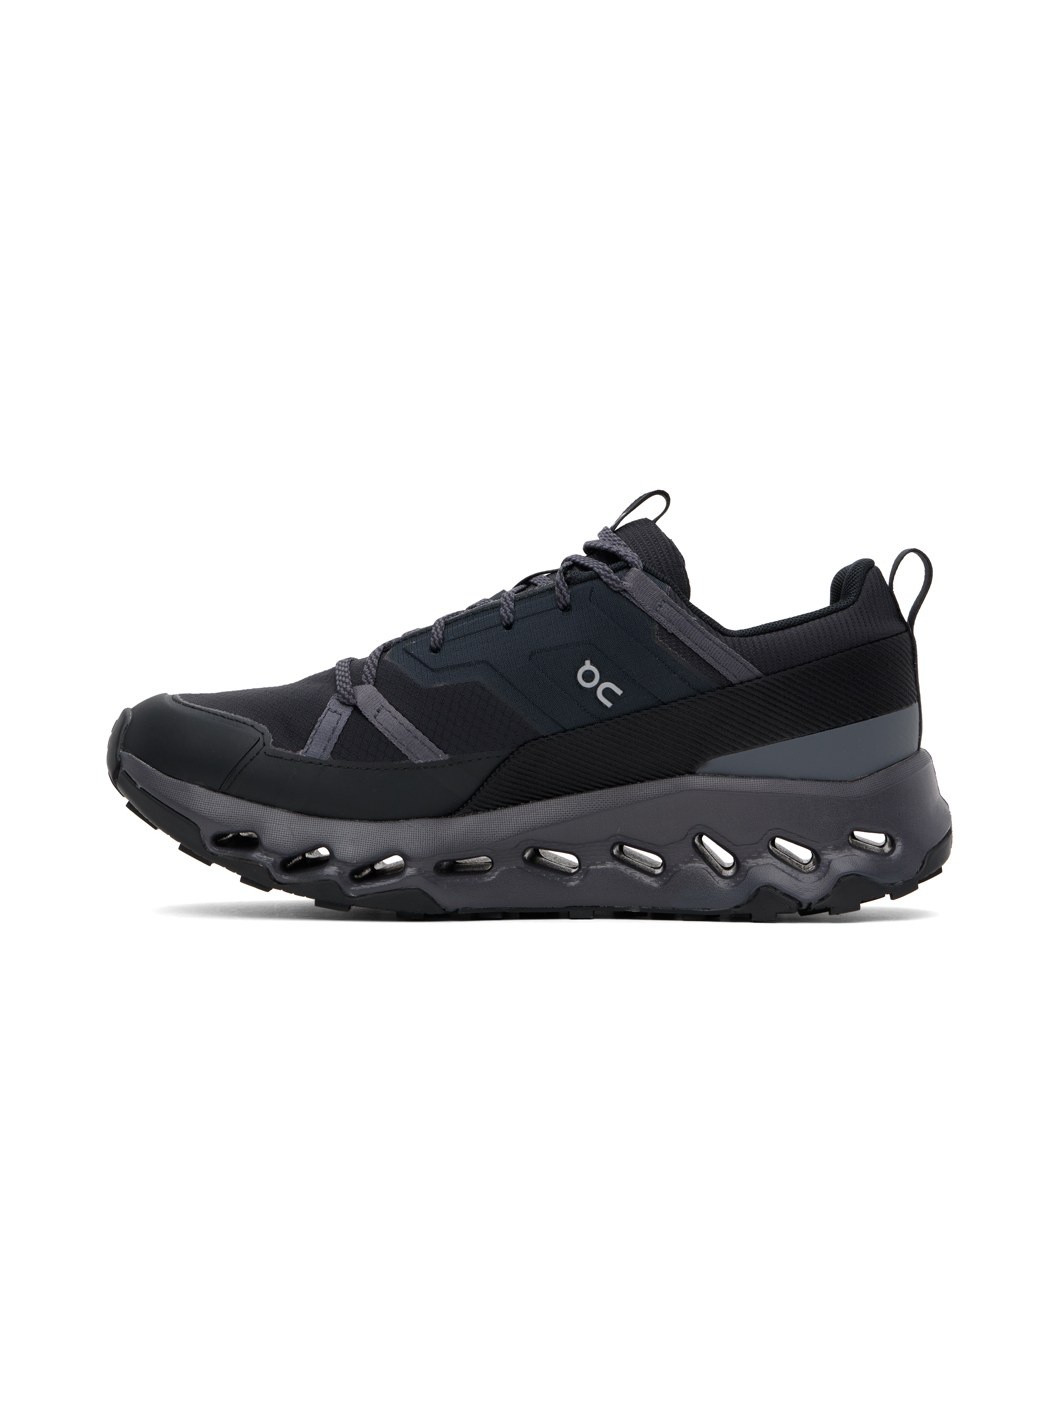 Black Cloudhorizon Waterproof Sneakers - 3